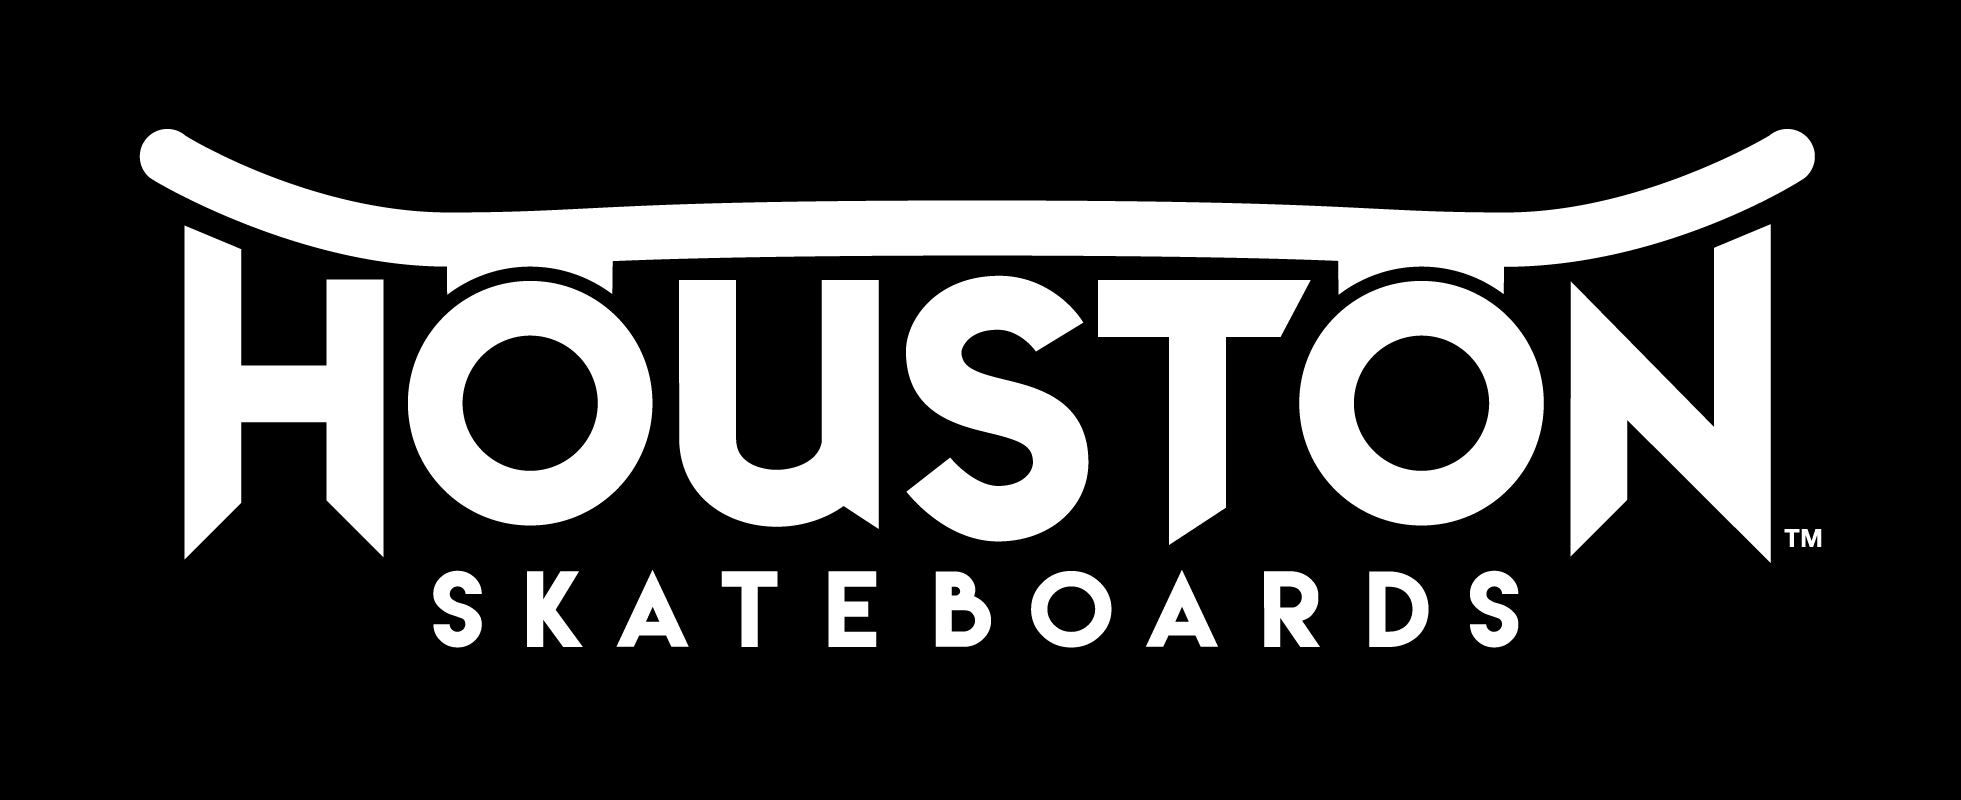 Houston logo white on black